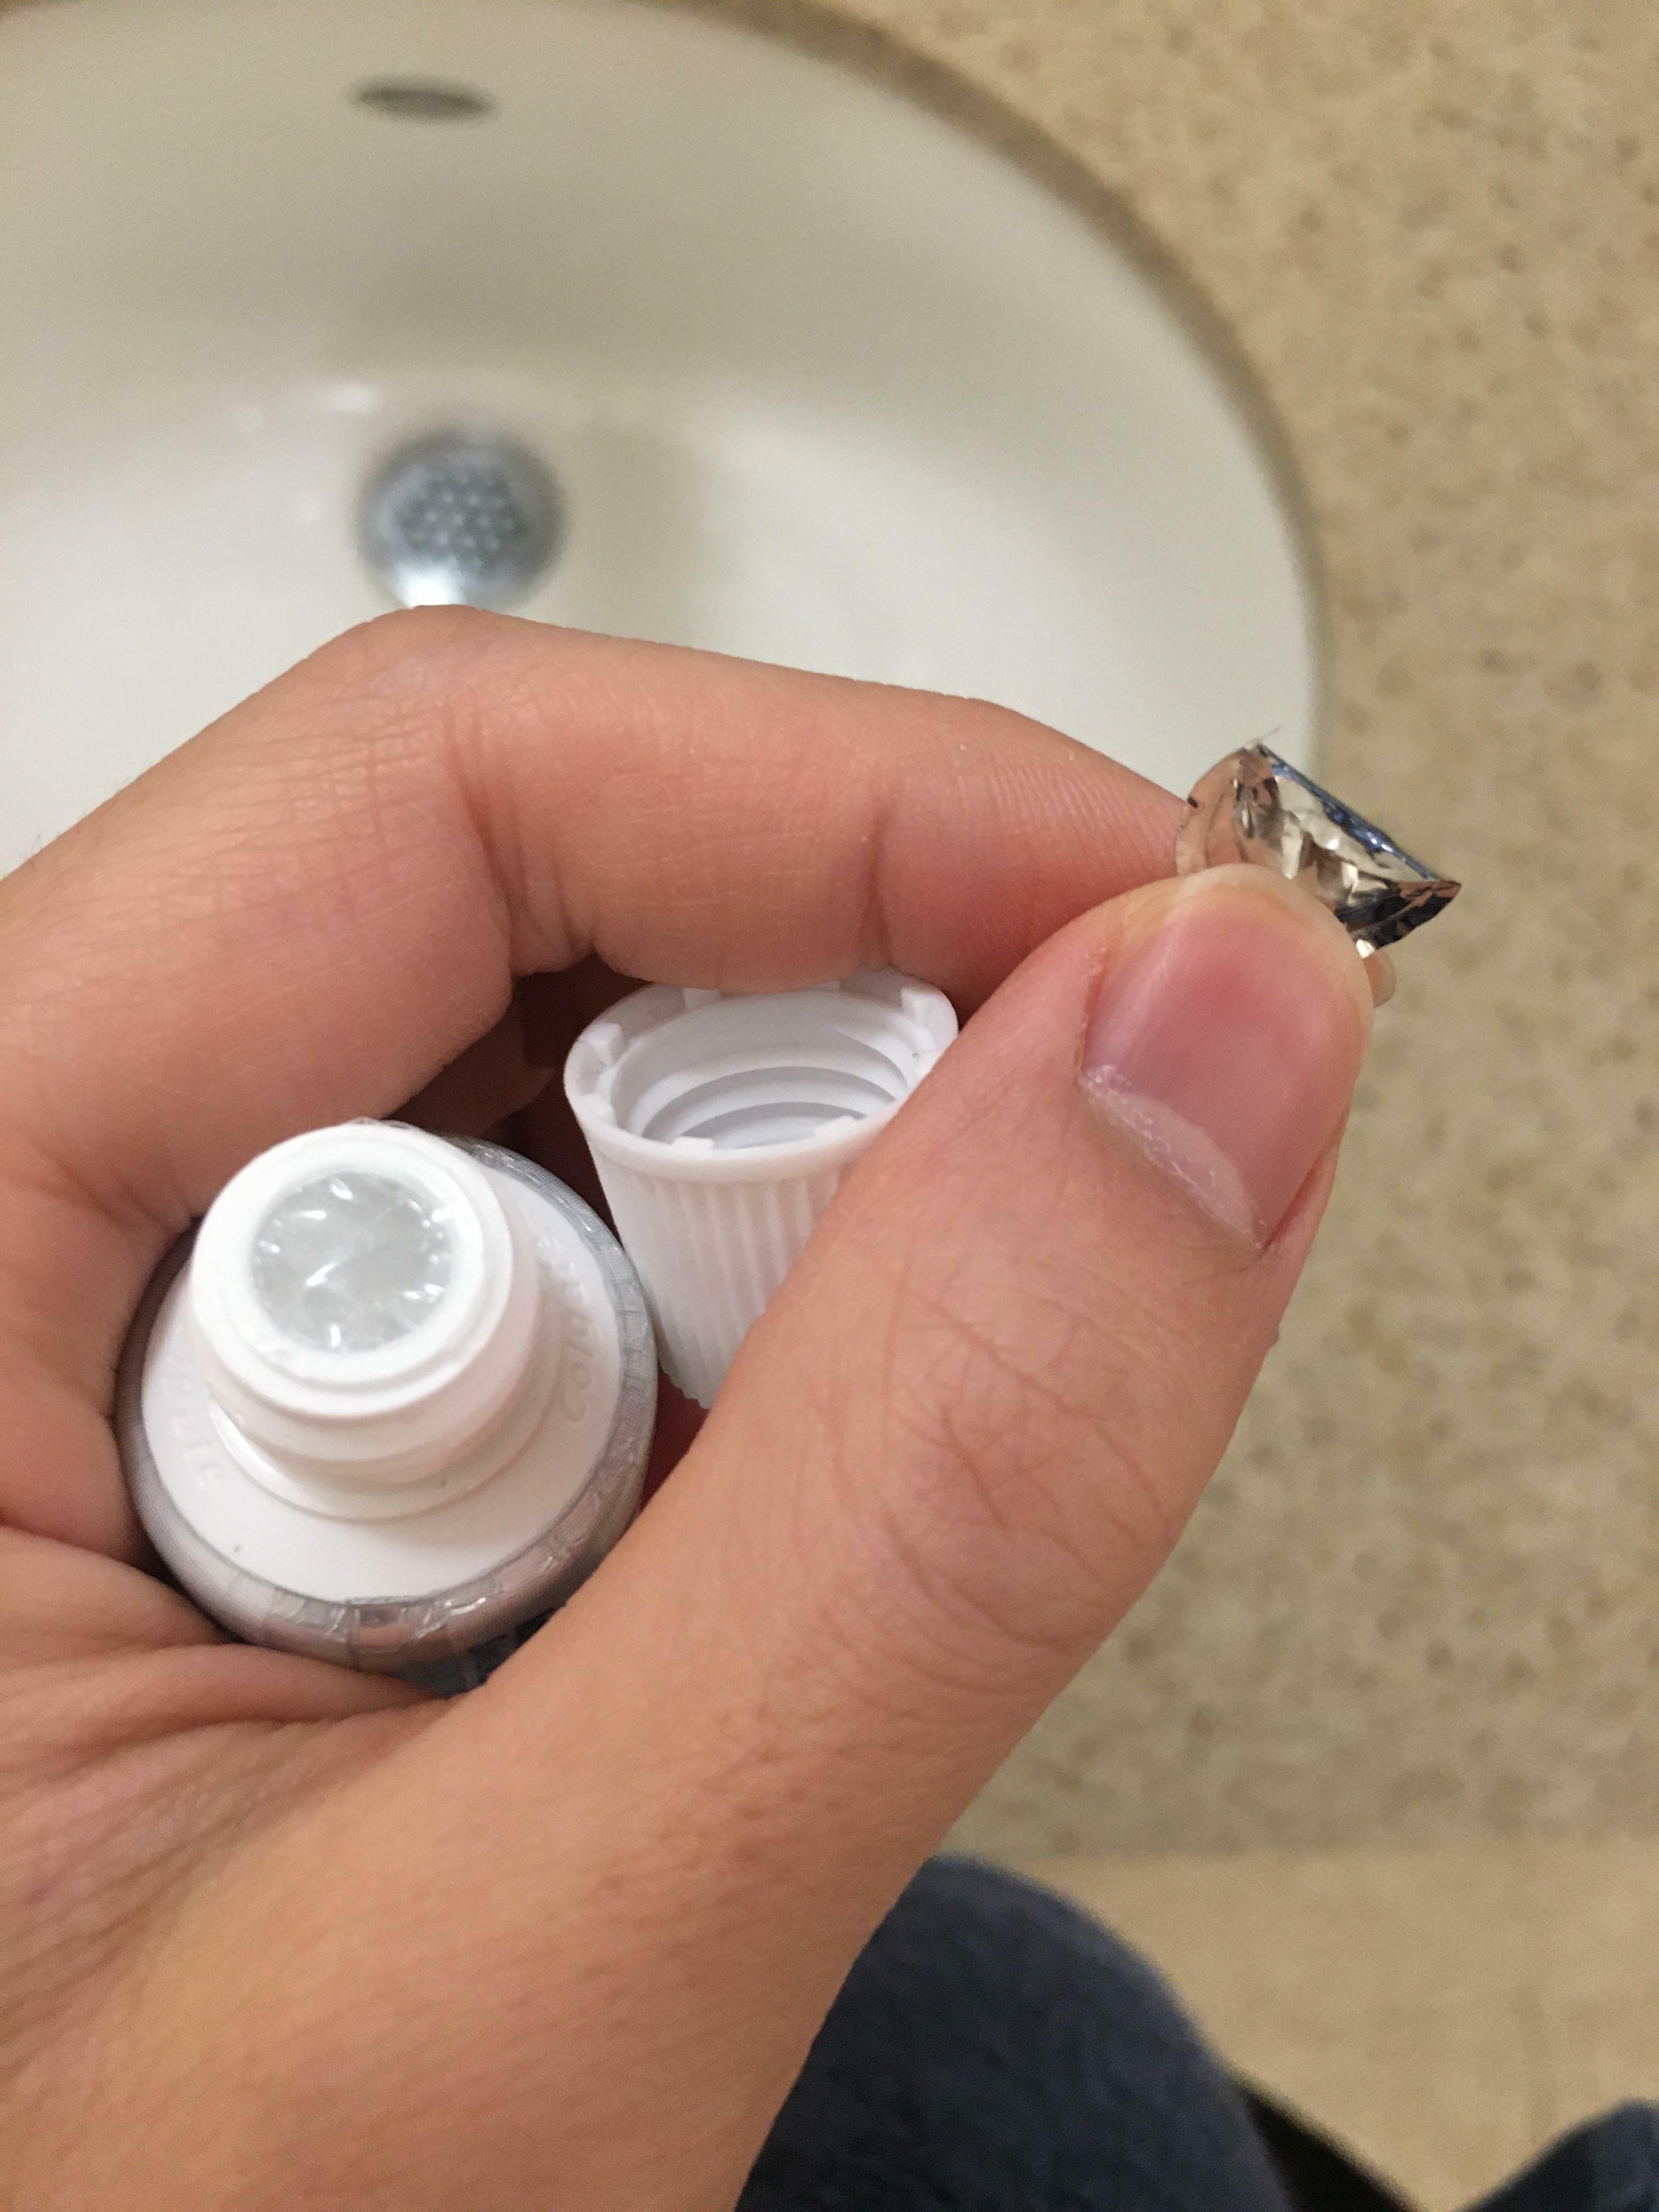 Après avoir enlevé la pellicule métallique de ce dentifrice, il restait une pellicule de plastique transparent sur la tête sans qu'il y ait de languette pour l'enlever.